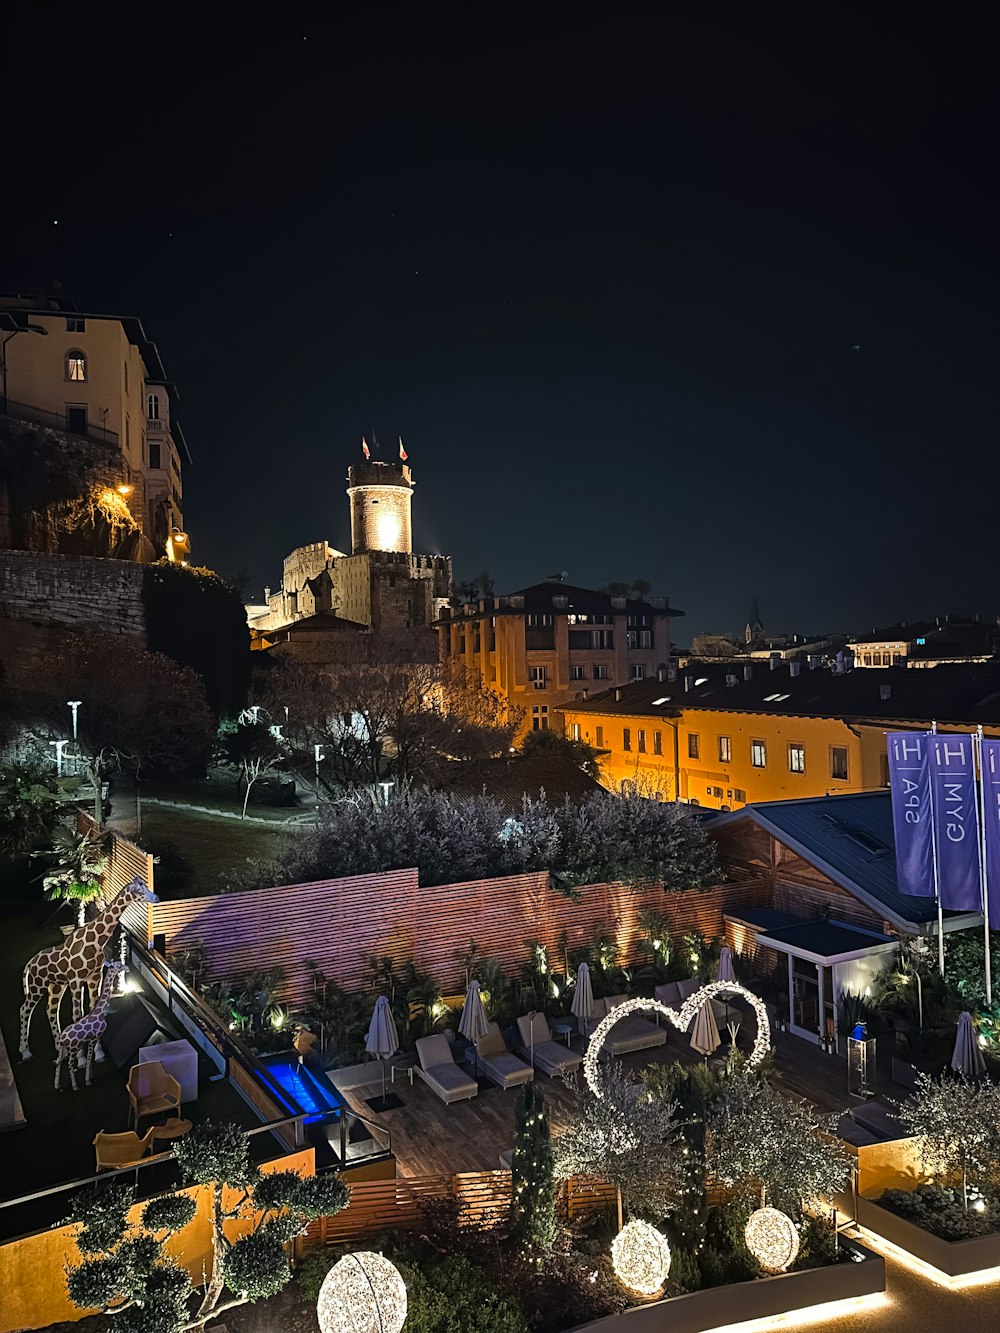 Una vista nocturna de una ciudad con una torre de reloj